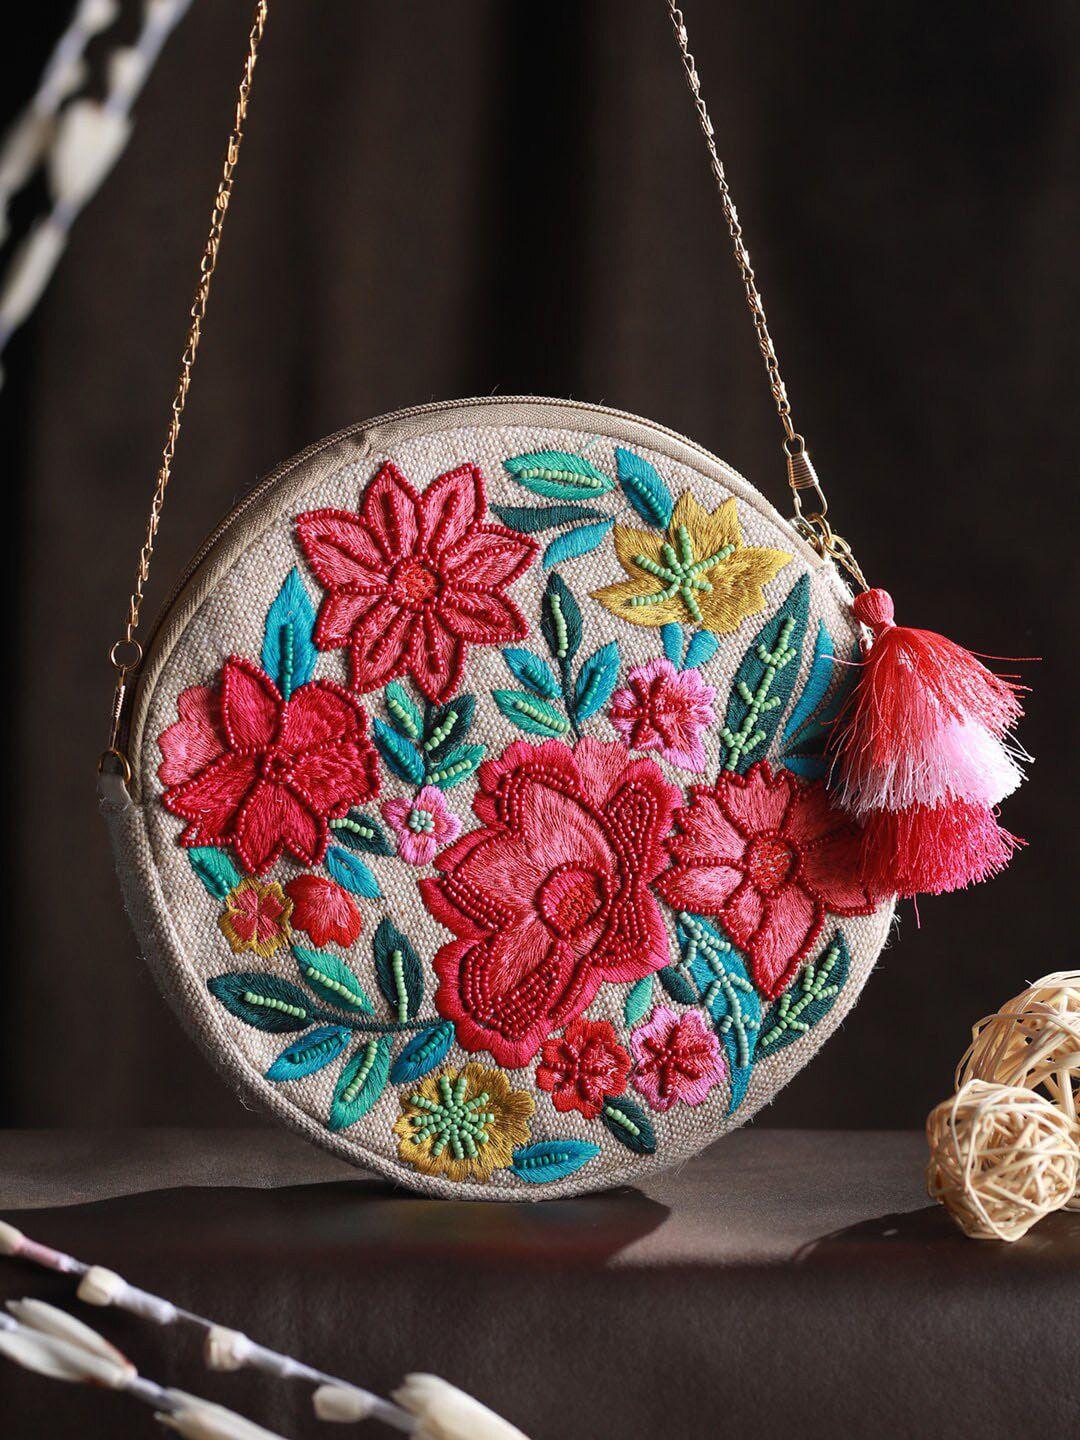 priyaasi pink floral embellished sling bag with tasselled